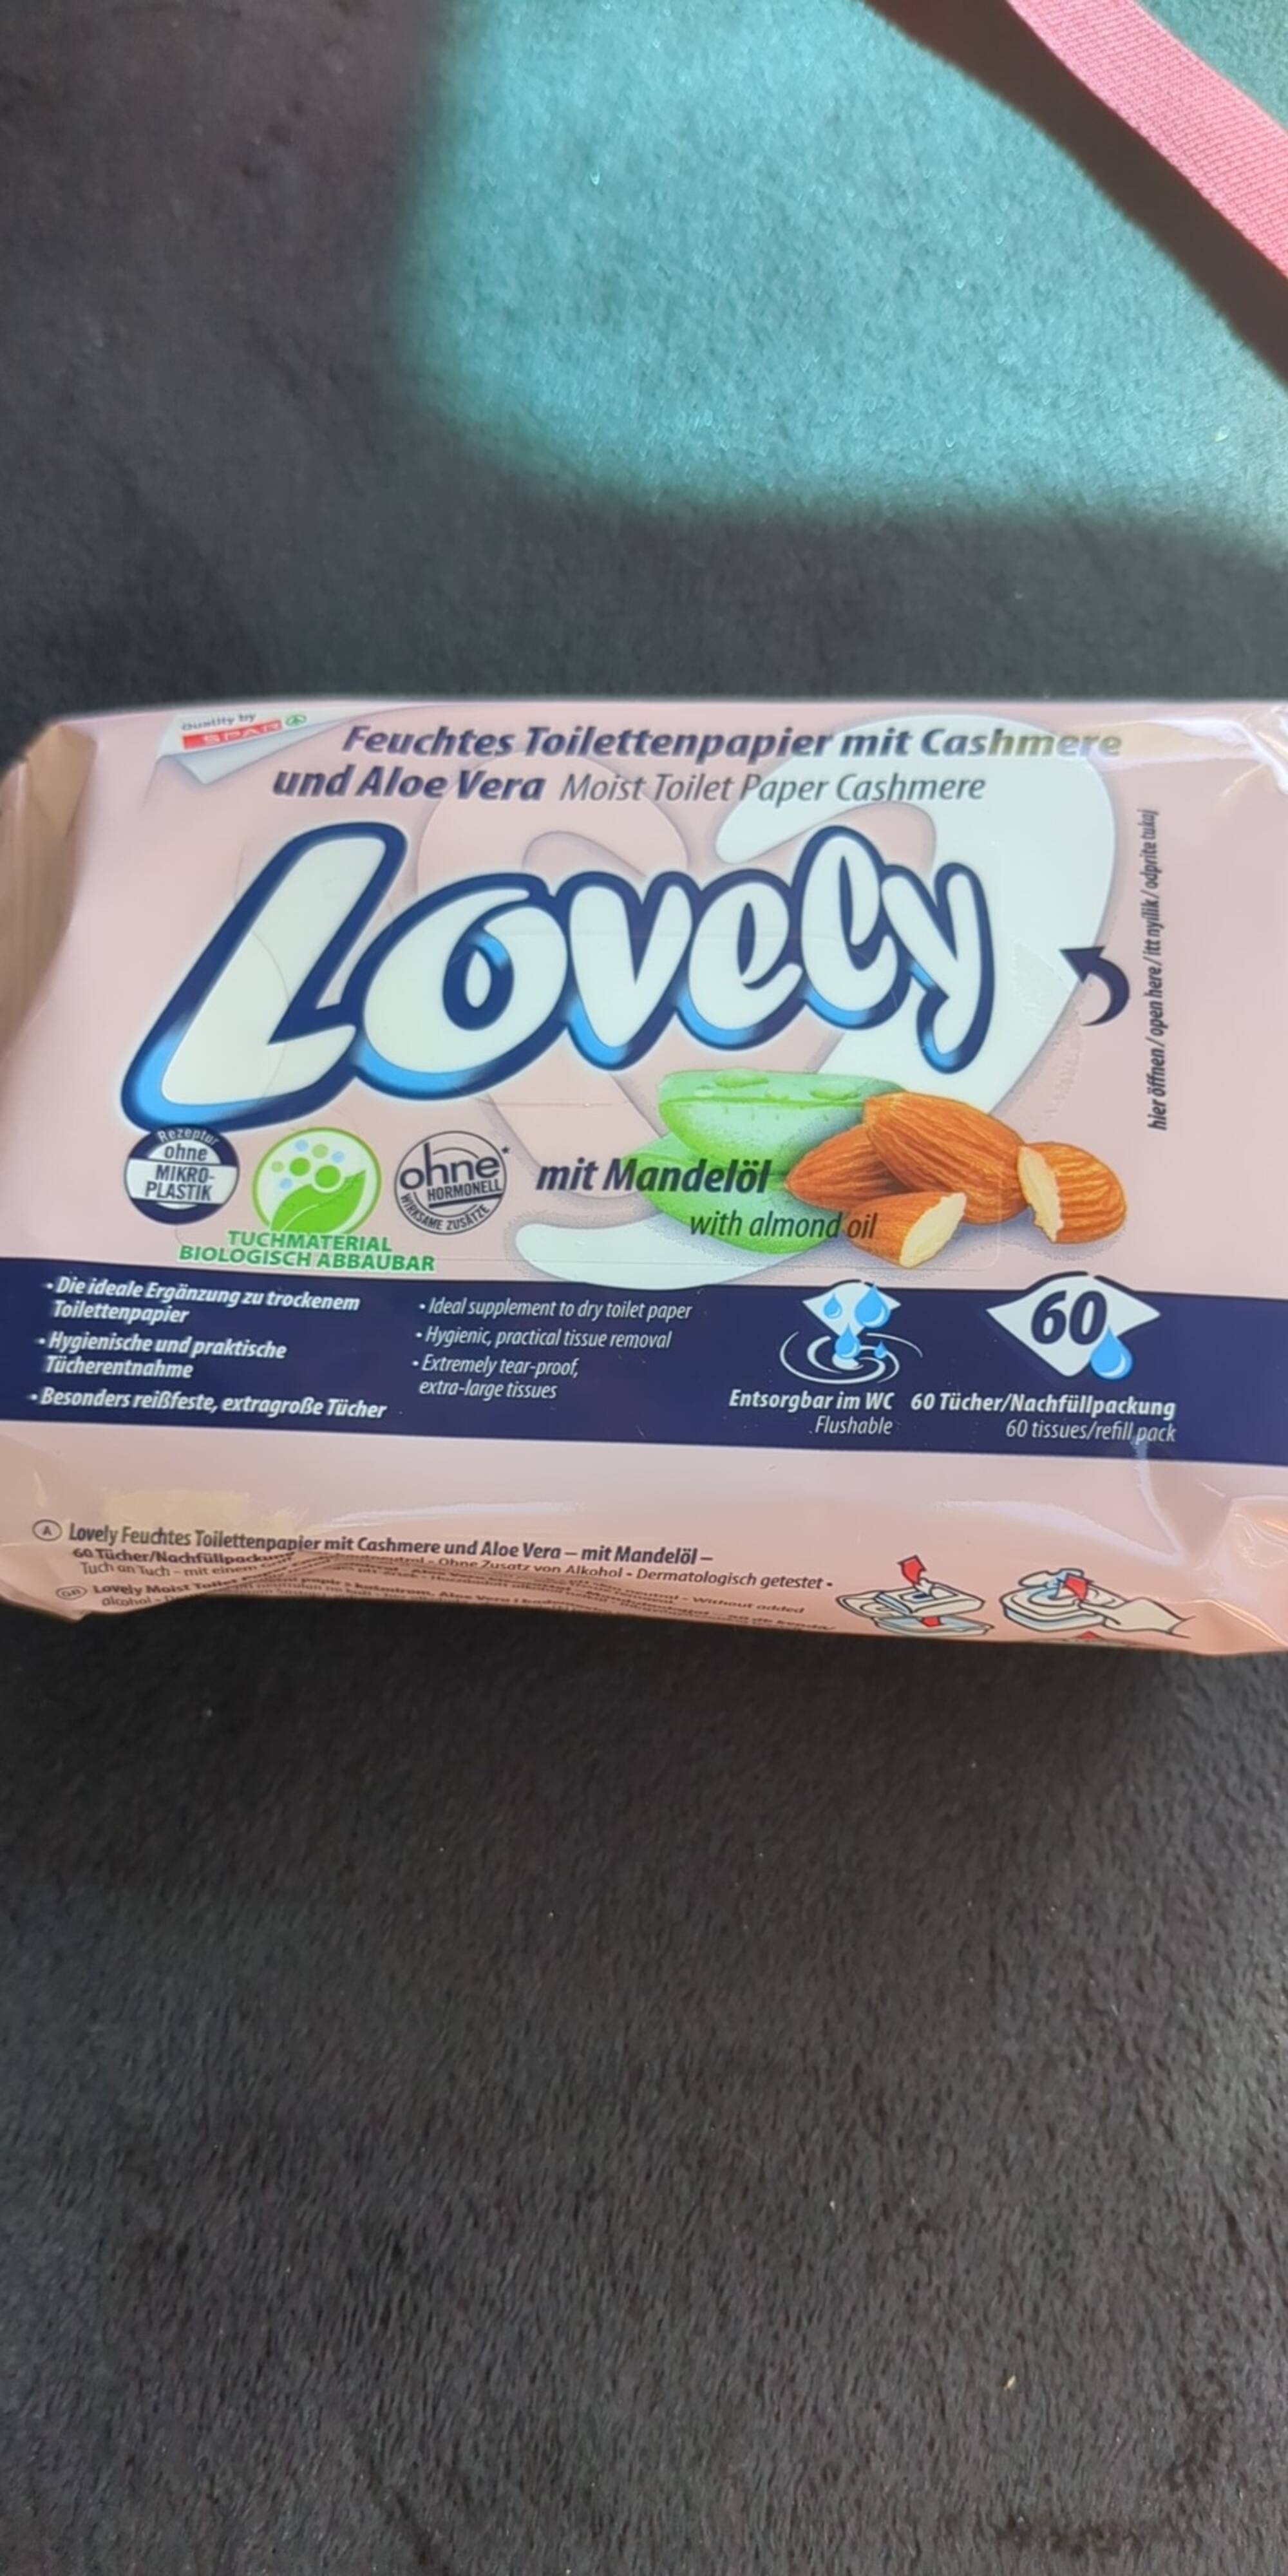 LOVELY - Moist toilet paper cashmere